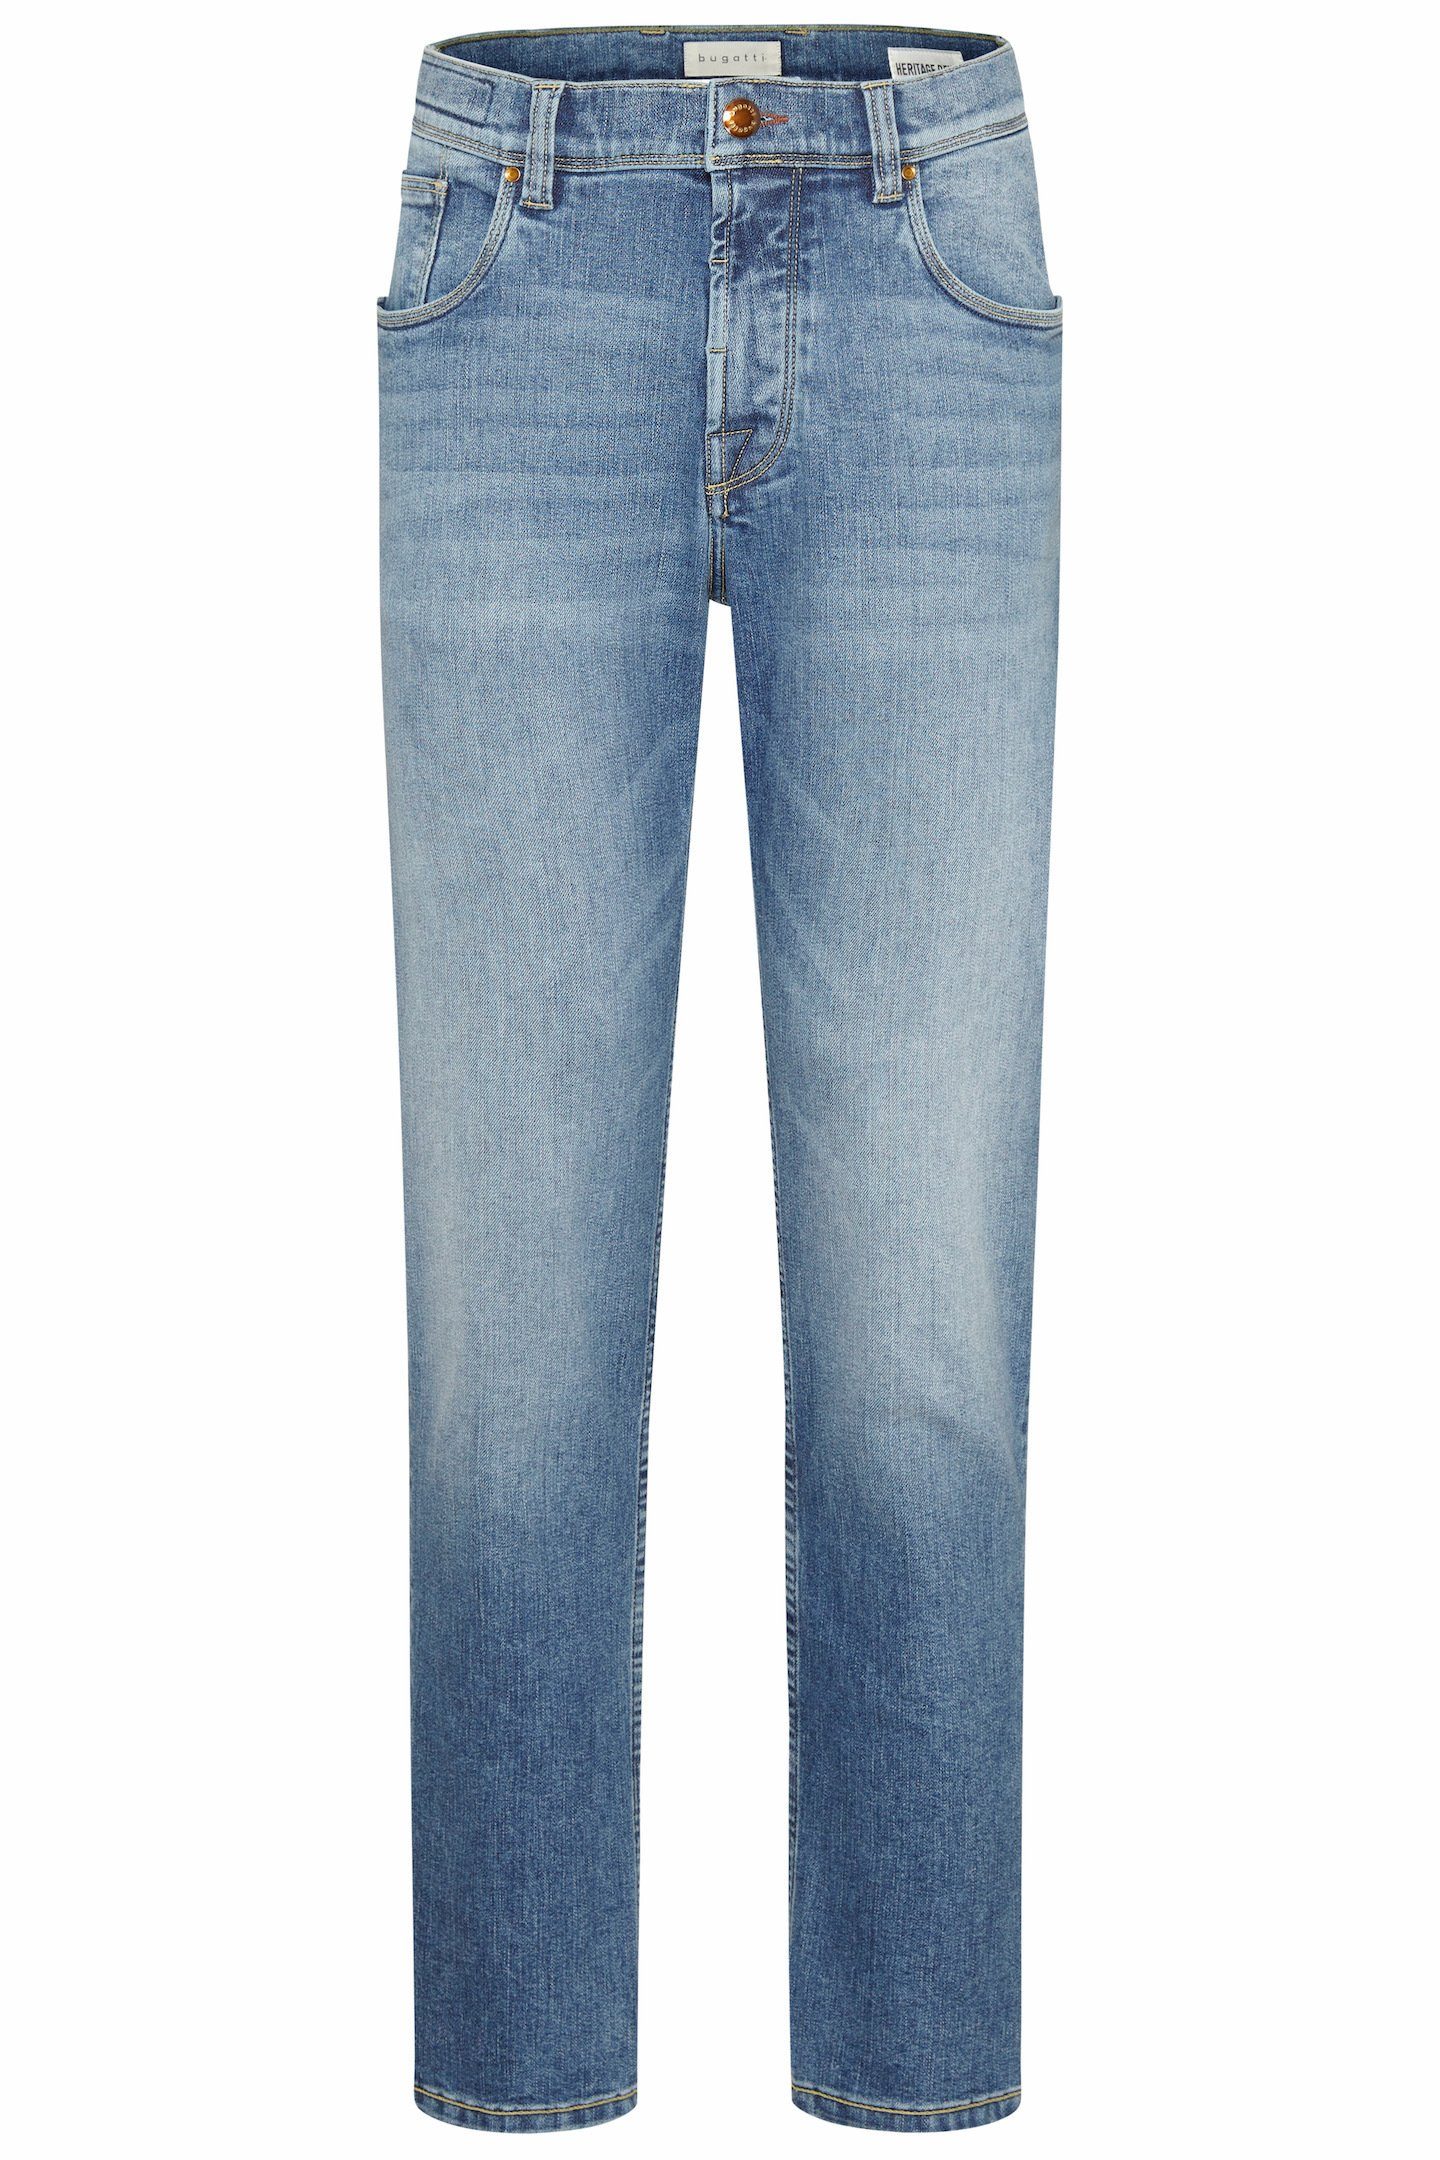 bugatti Wash blau 5-Pocket-Jeans im Look Used